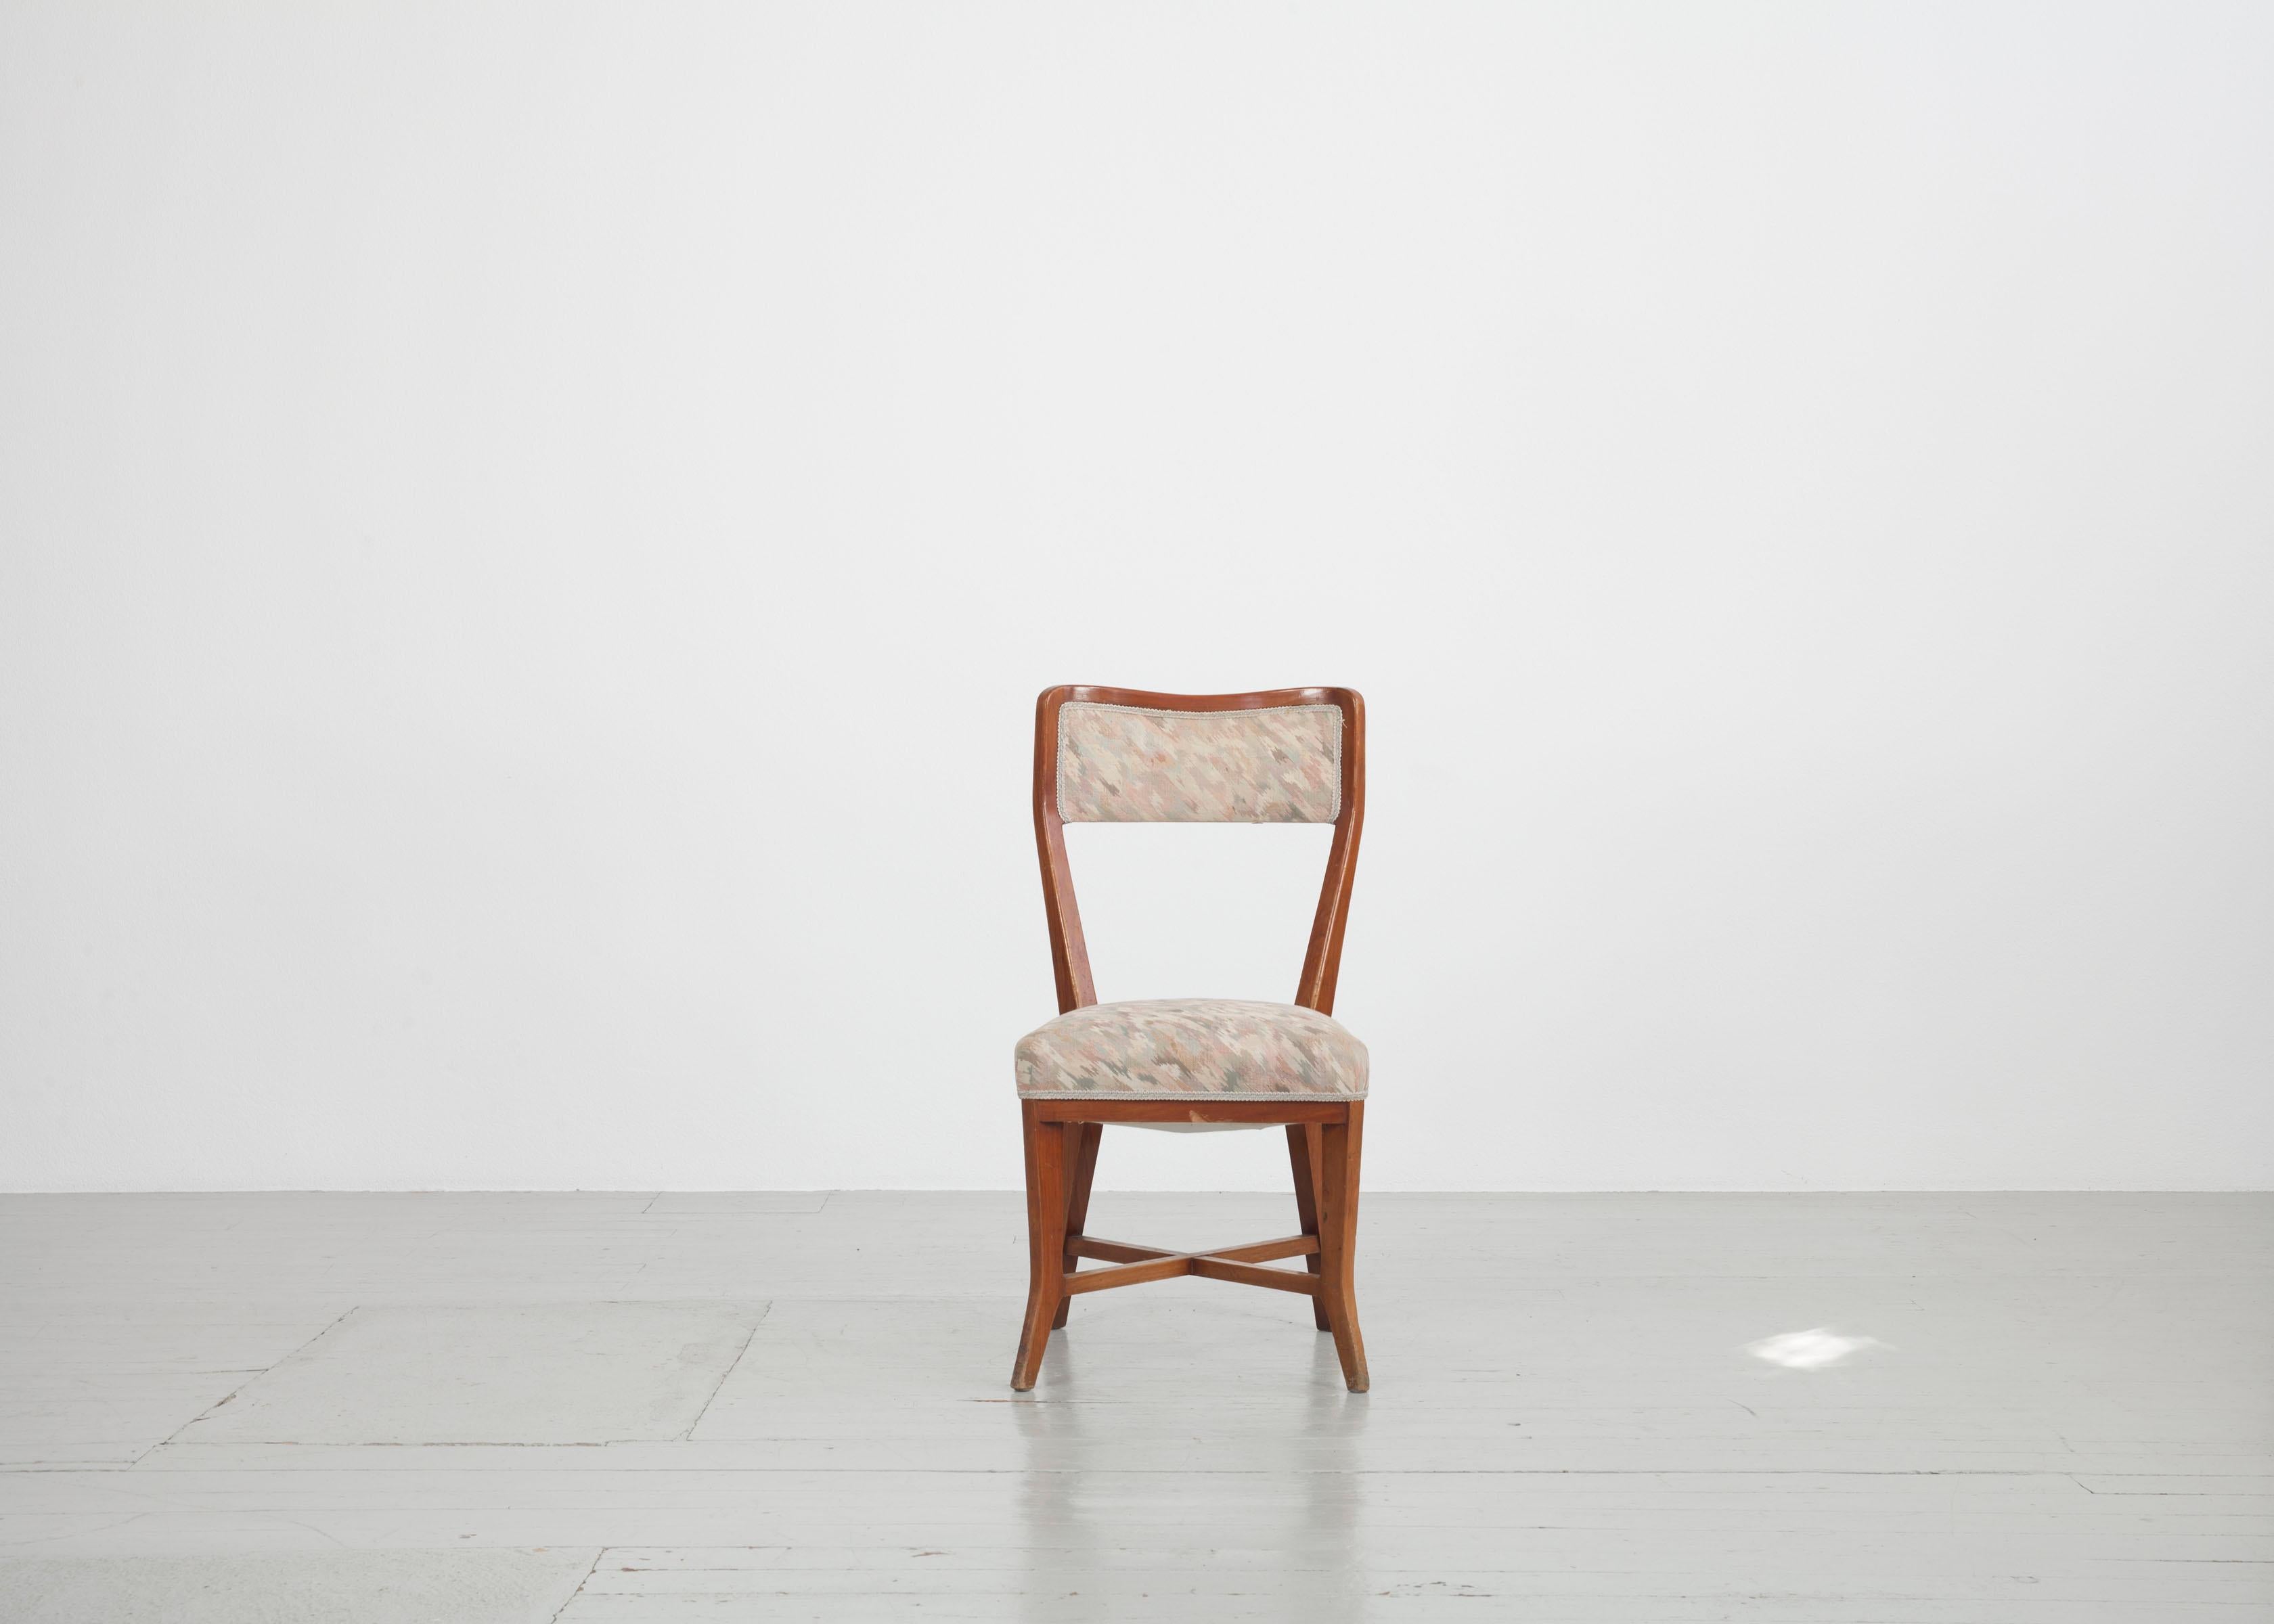 Dieses Set aus sechs Stühlen wurde in den 1950er Jahren in Italien von Bega Bologna entworfen und hergestellt. Der Rahmen besteht aus glänzend lackiertem Kirschholz und ist in sehr stabilem Zustand. Die verspielte Form verleiht den Stühlen Eleganz.